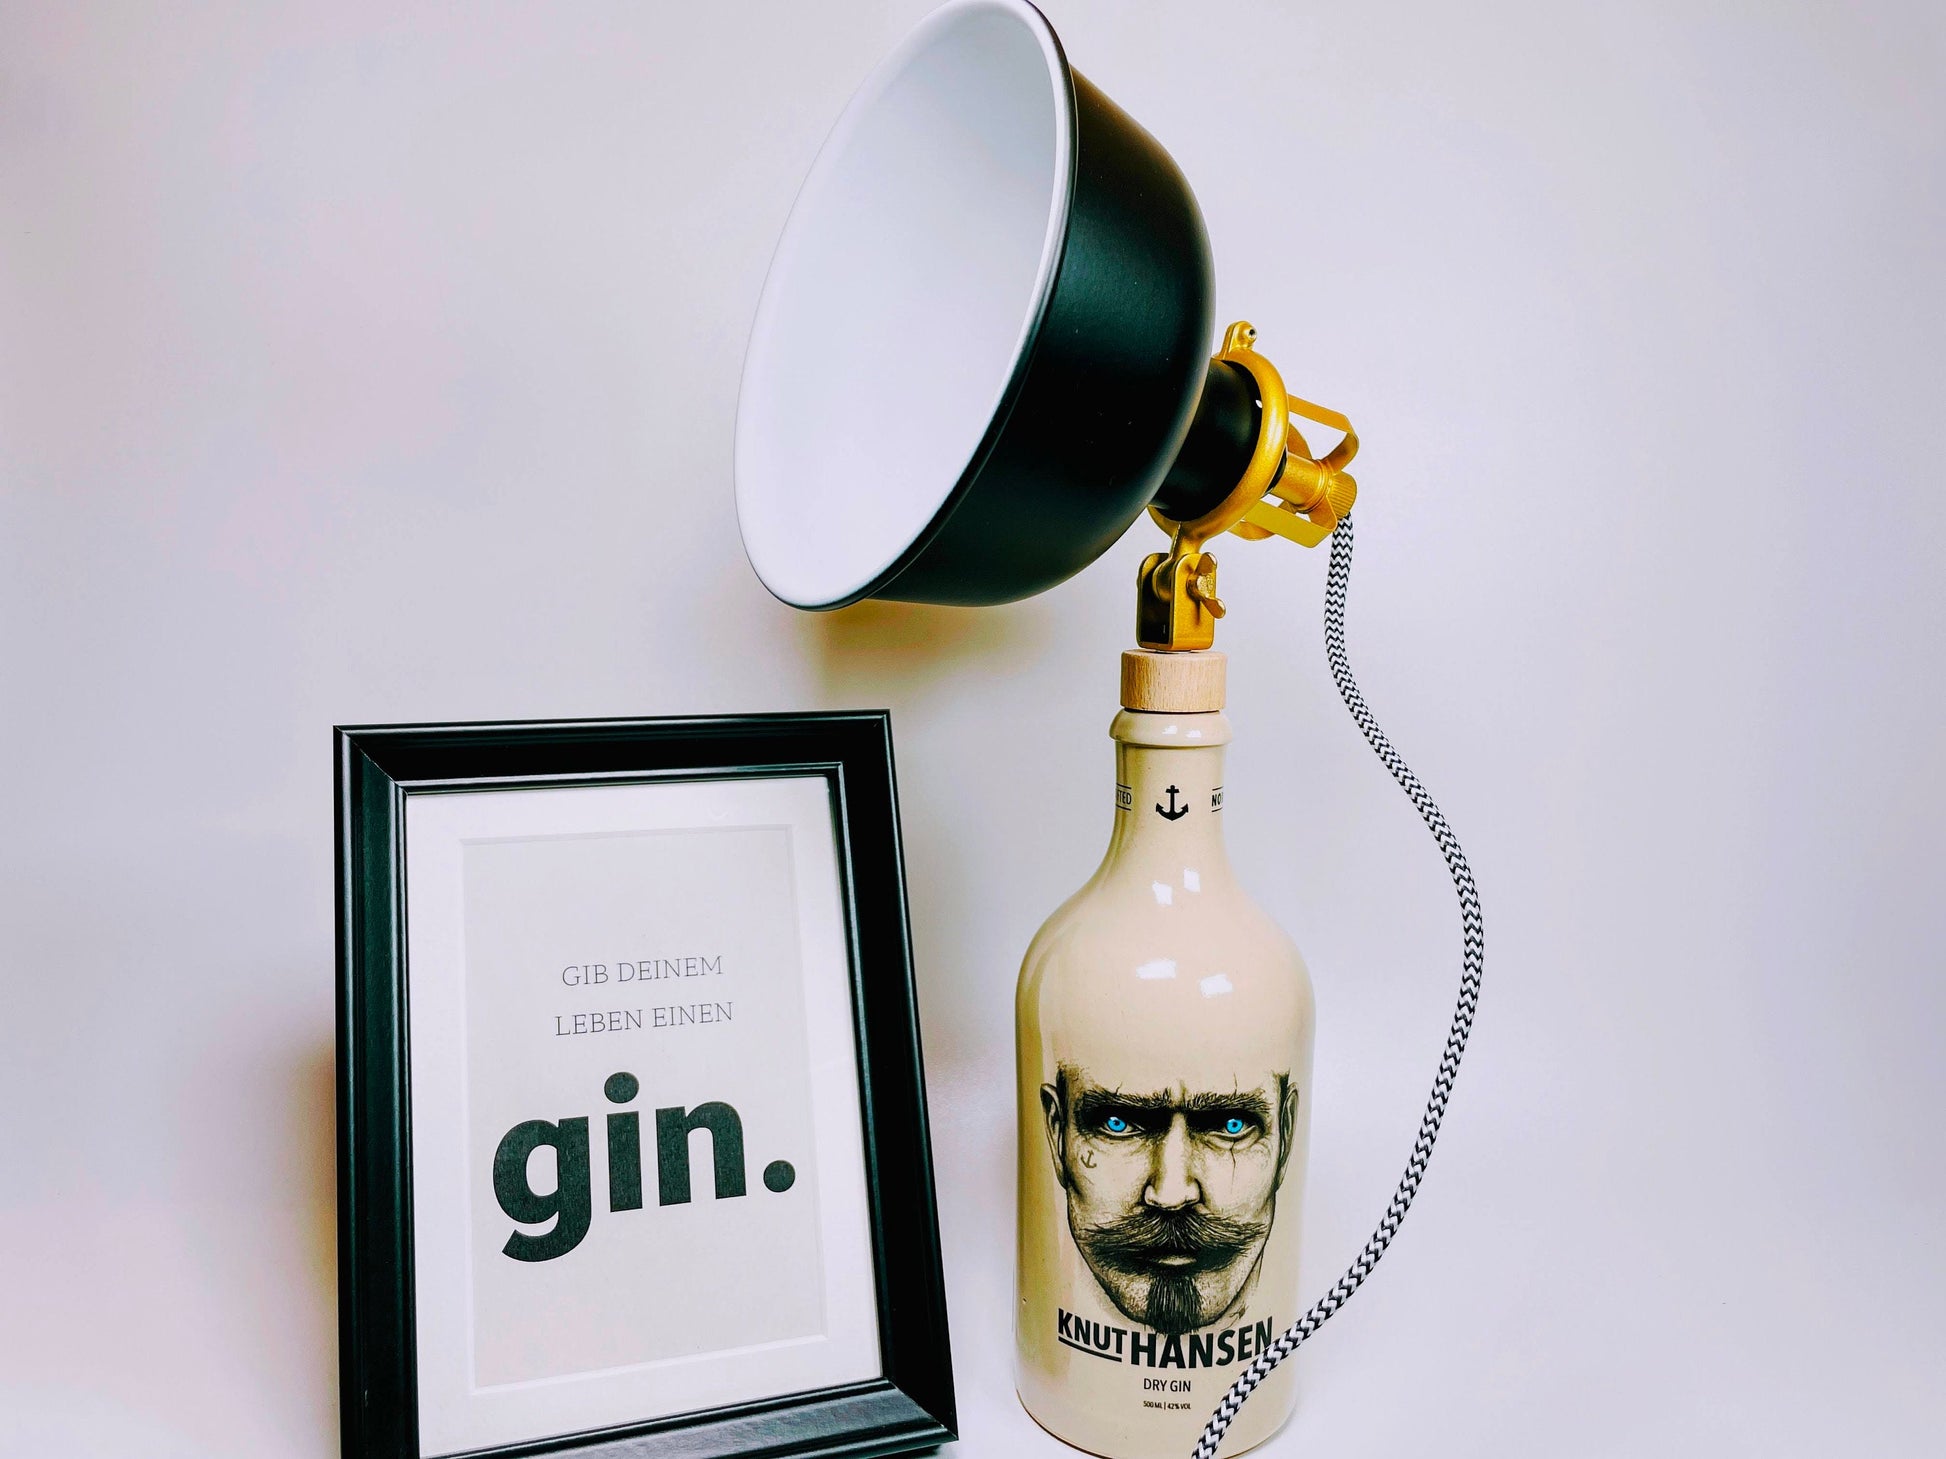 Knut Hansen Gin Vintage-Lampe | Handgemachte nachhaltige Tischlampe aus Knut Hansen Gin | Einzigartige Geschenkidee | Deko-Licht | Upcycling